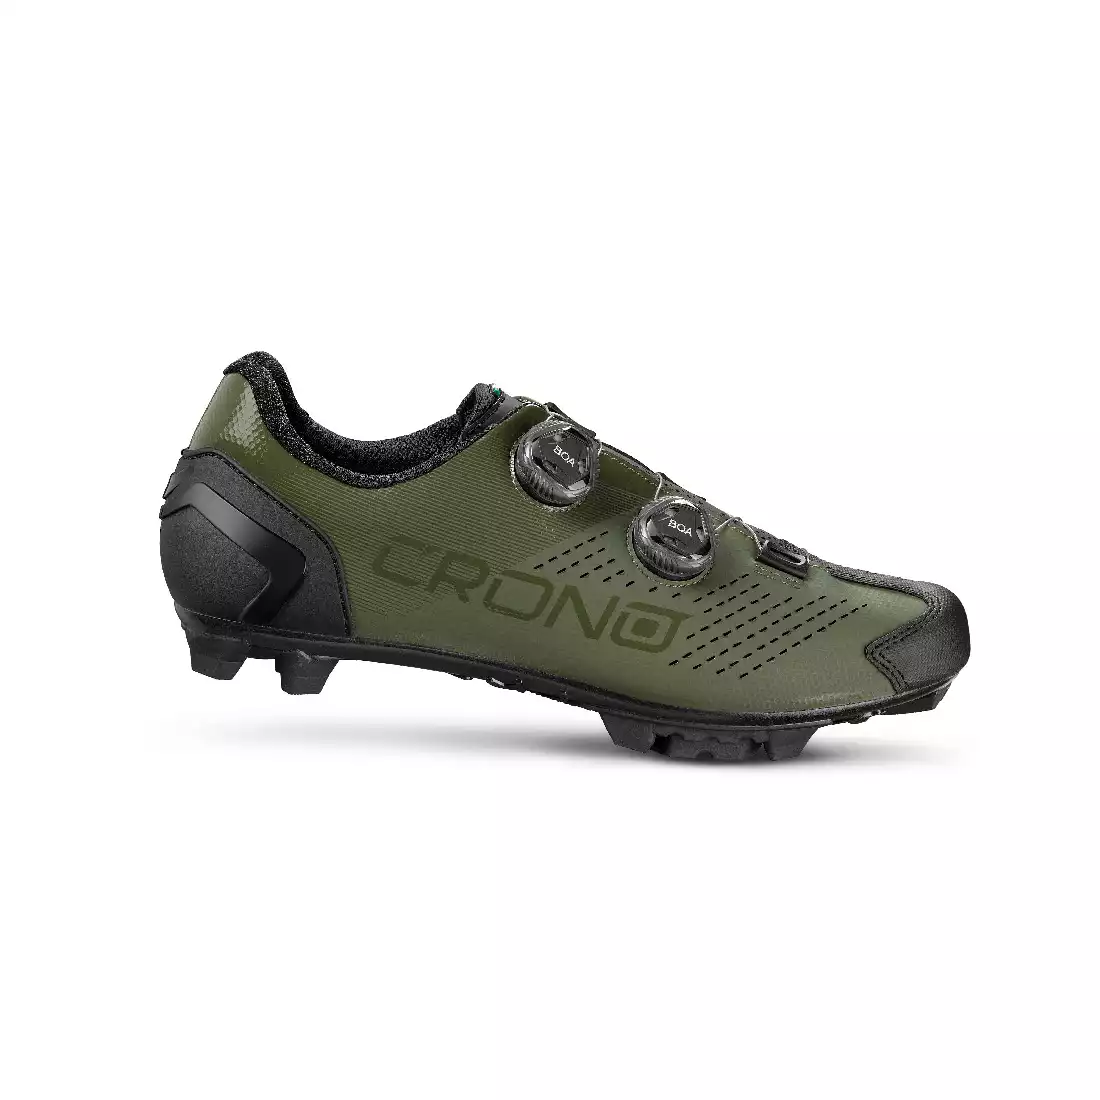 CRONO CX-2-22 Cyklistické topánky MTB, zelená